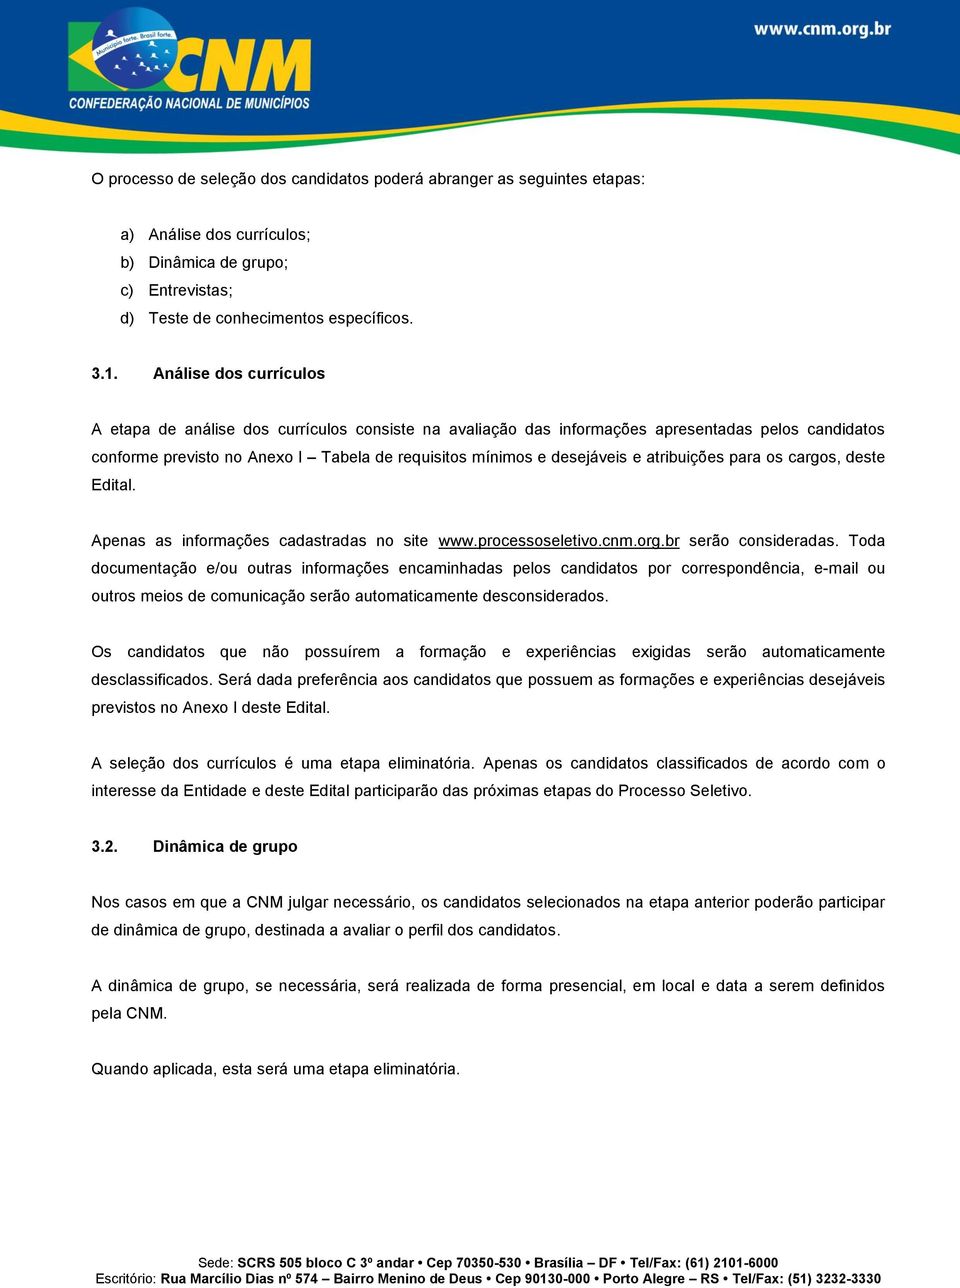 atribuições para os cargos, deste Edital. Apenas as informações cadastradas no site www.processoseletivo.cnm.org.br serão consideradas.